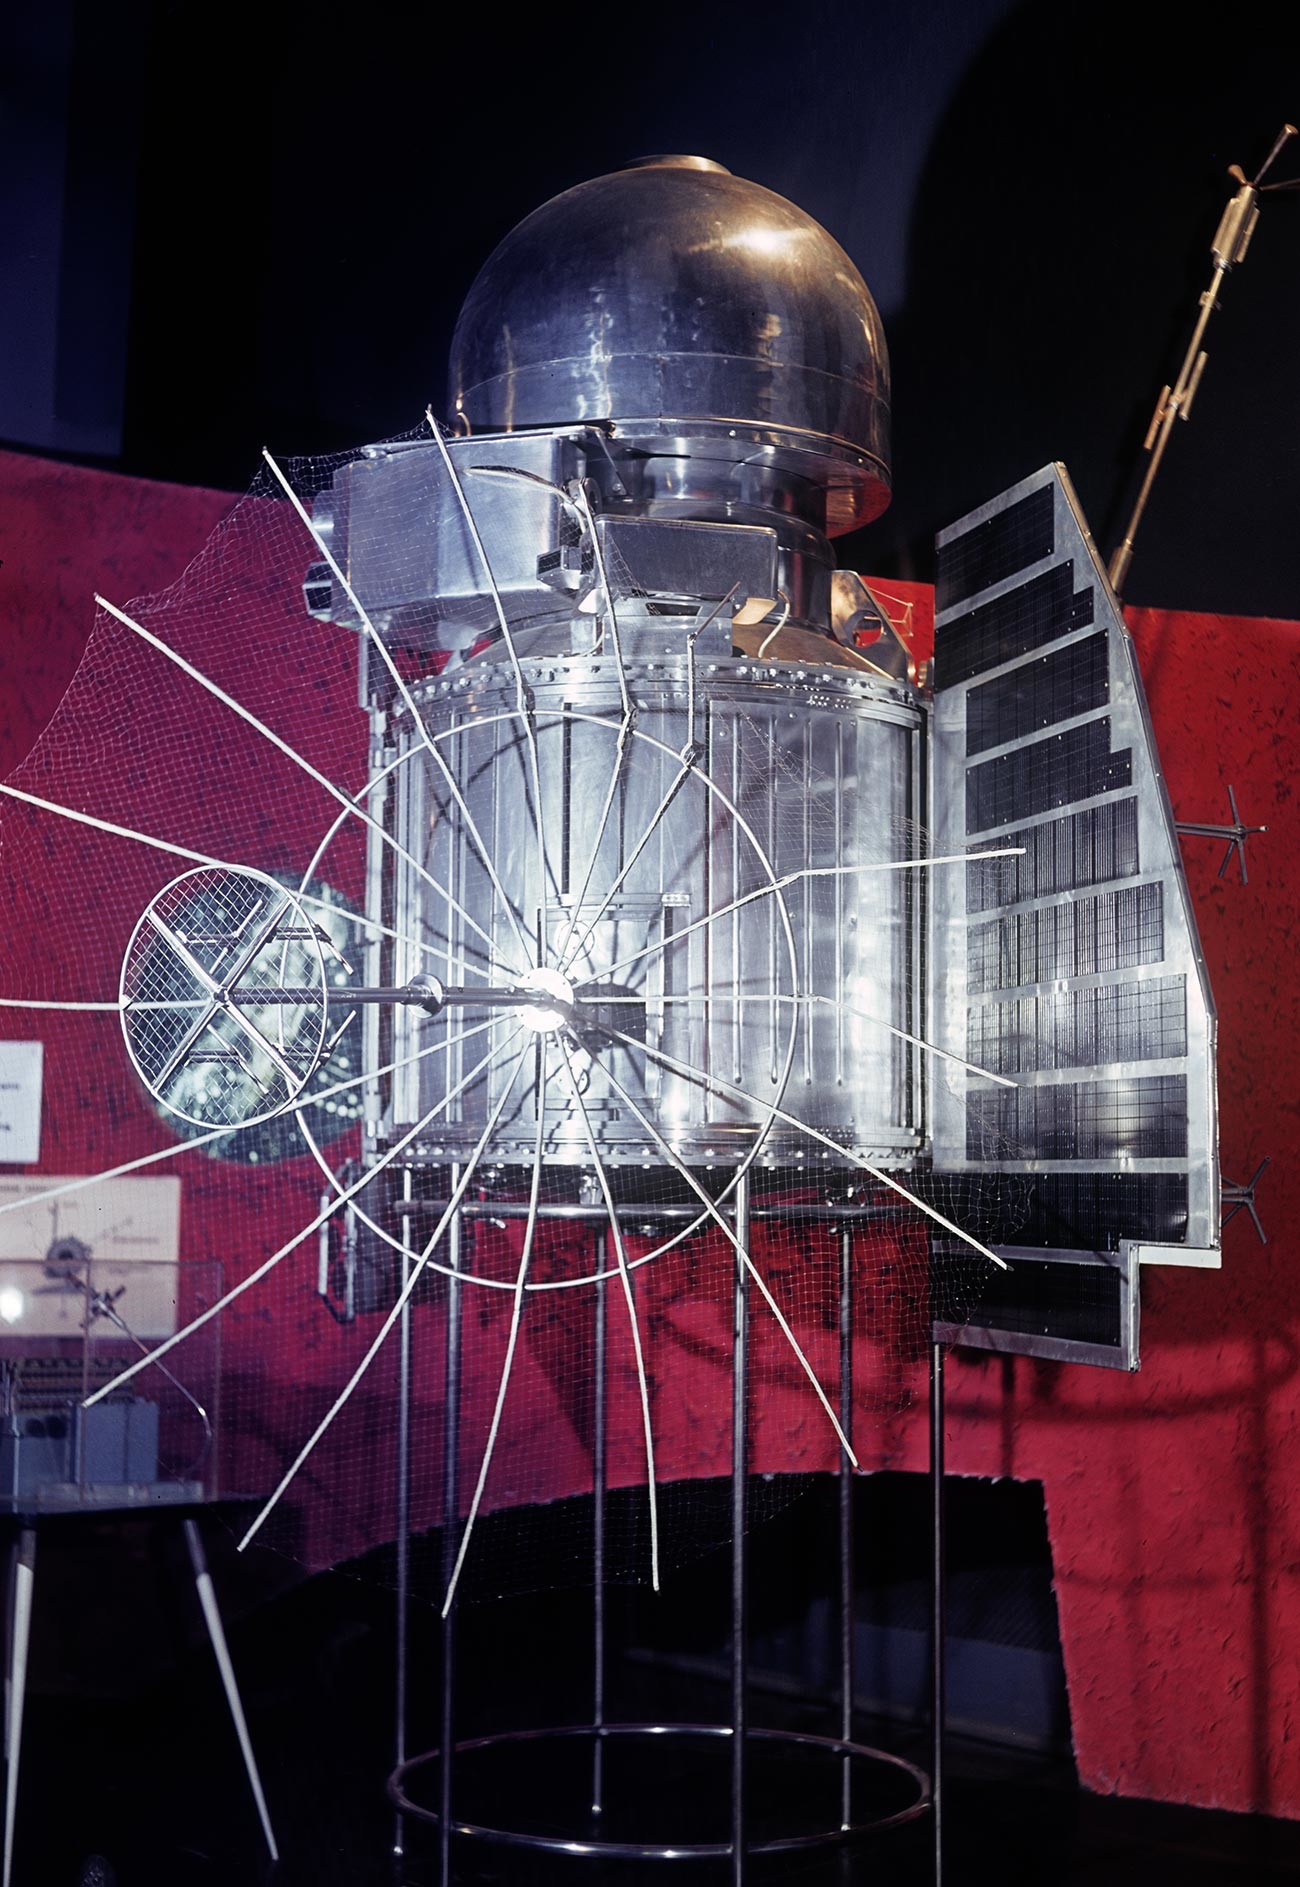 Модел аутоматске међупланетарне станице „Венера 1“, послате на Венеру 12. фебруара 1961. године. Изложба достигнућа народне привреде СССР-а у Москви.